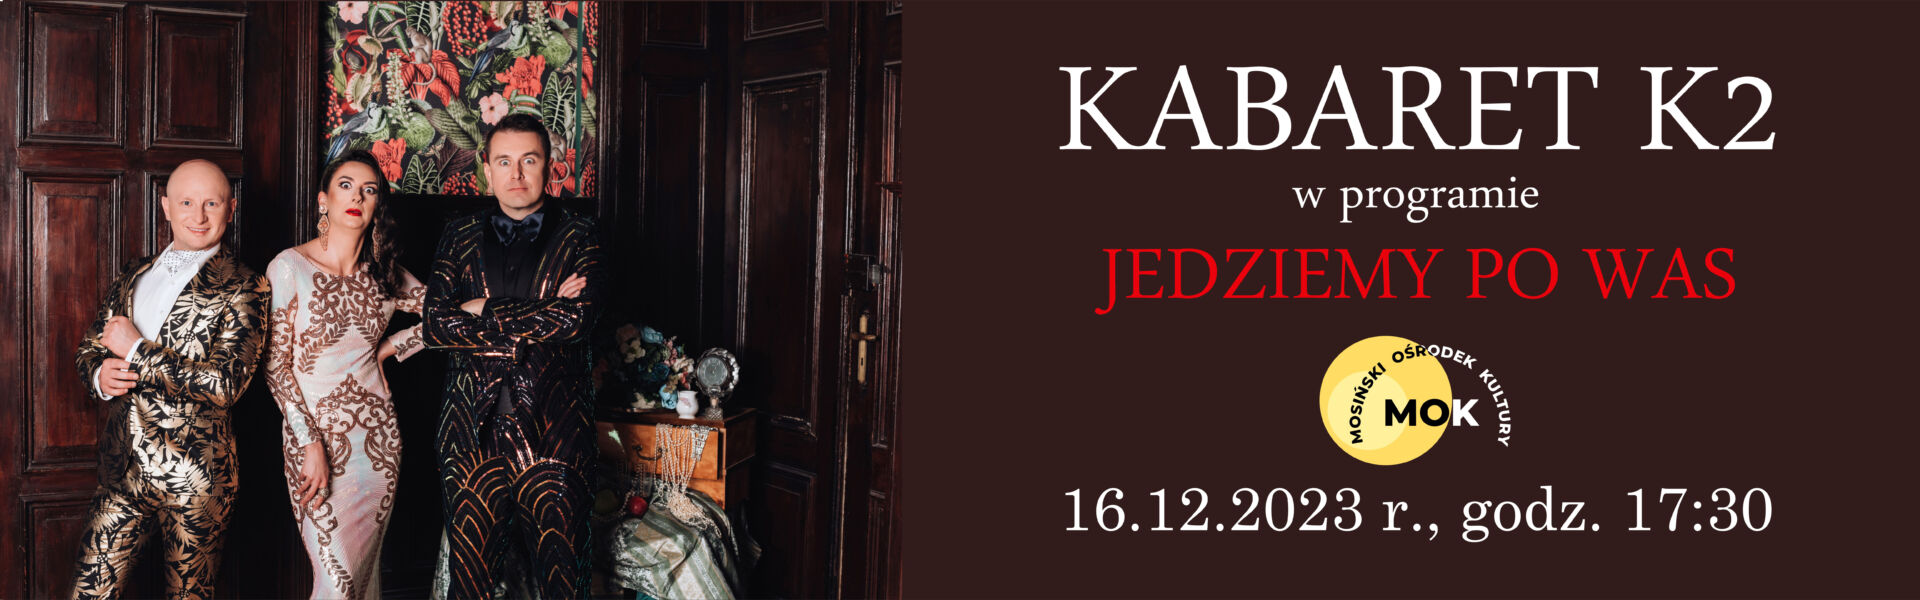 Banner reklamowy na którym znajdują się wizerunki osób reprezentujące kabaret K2. W drugiej części znajduje się tekst opisujący zaproszenie na występ.